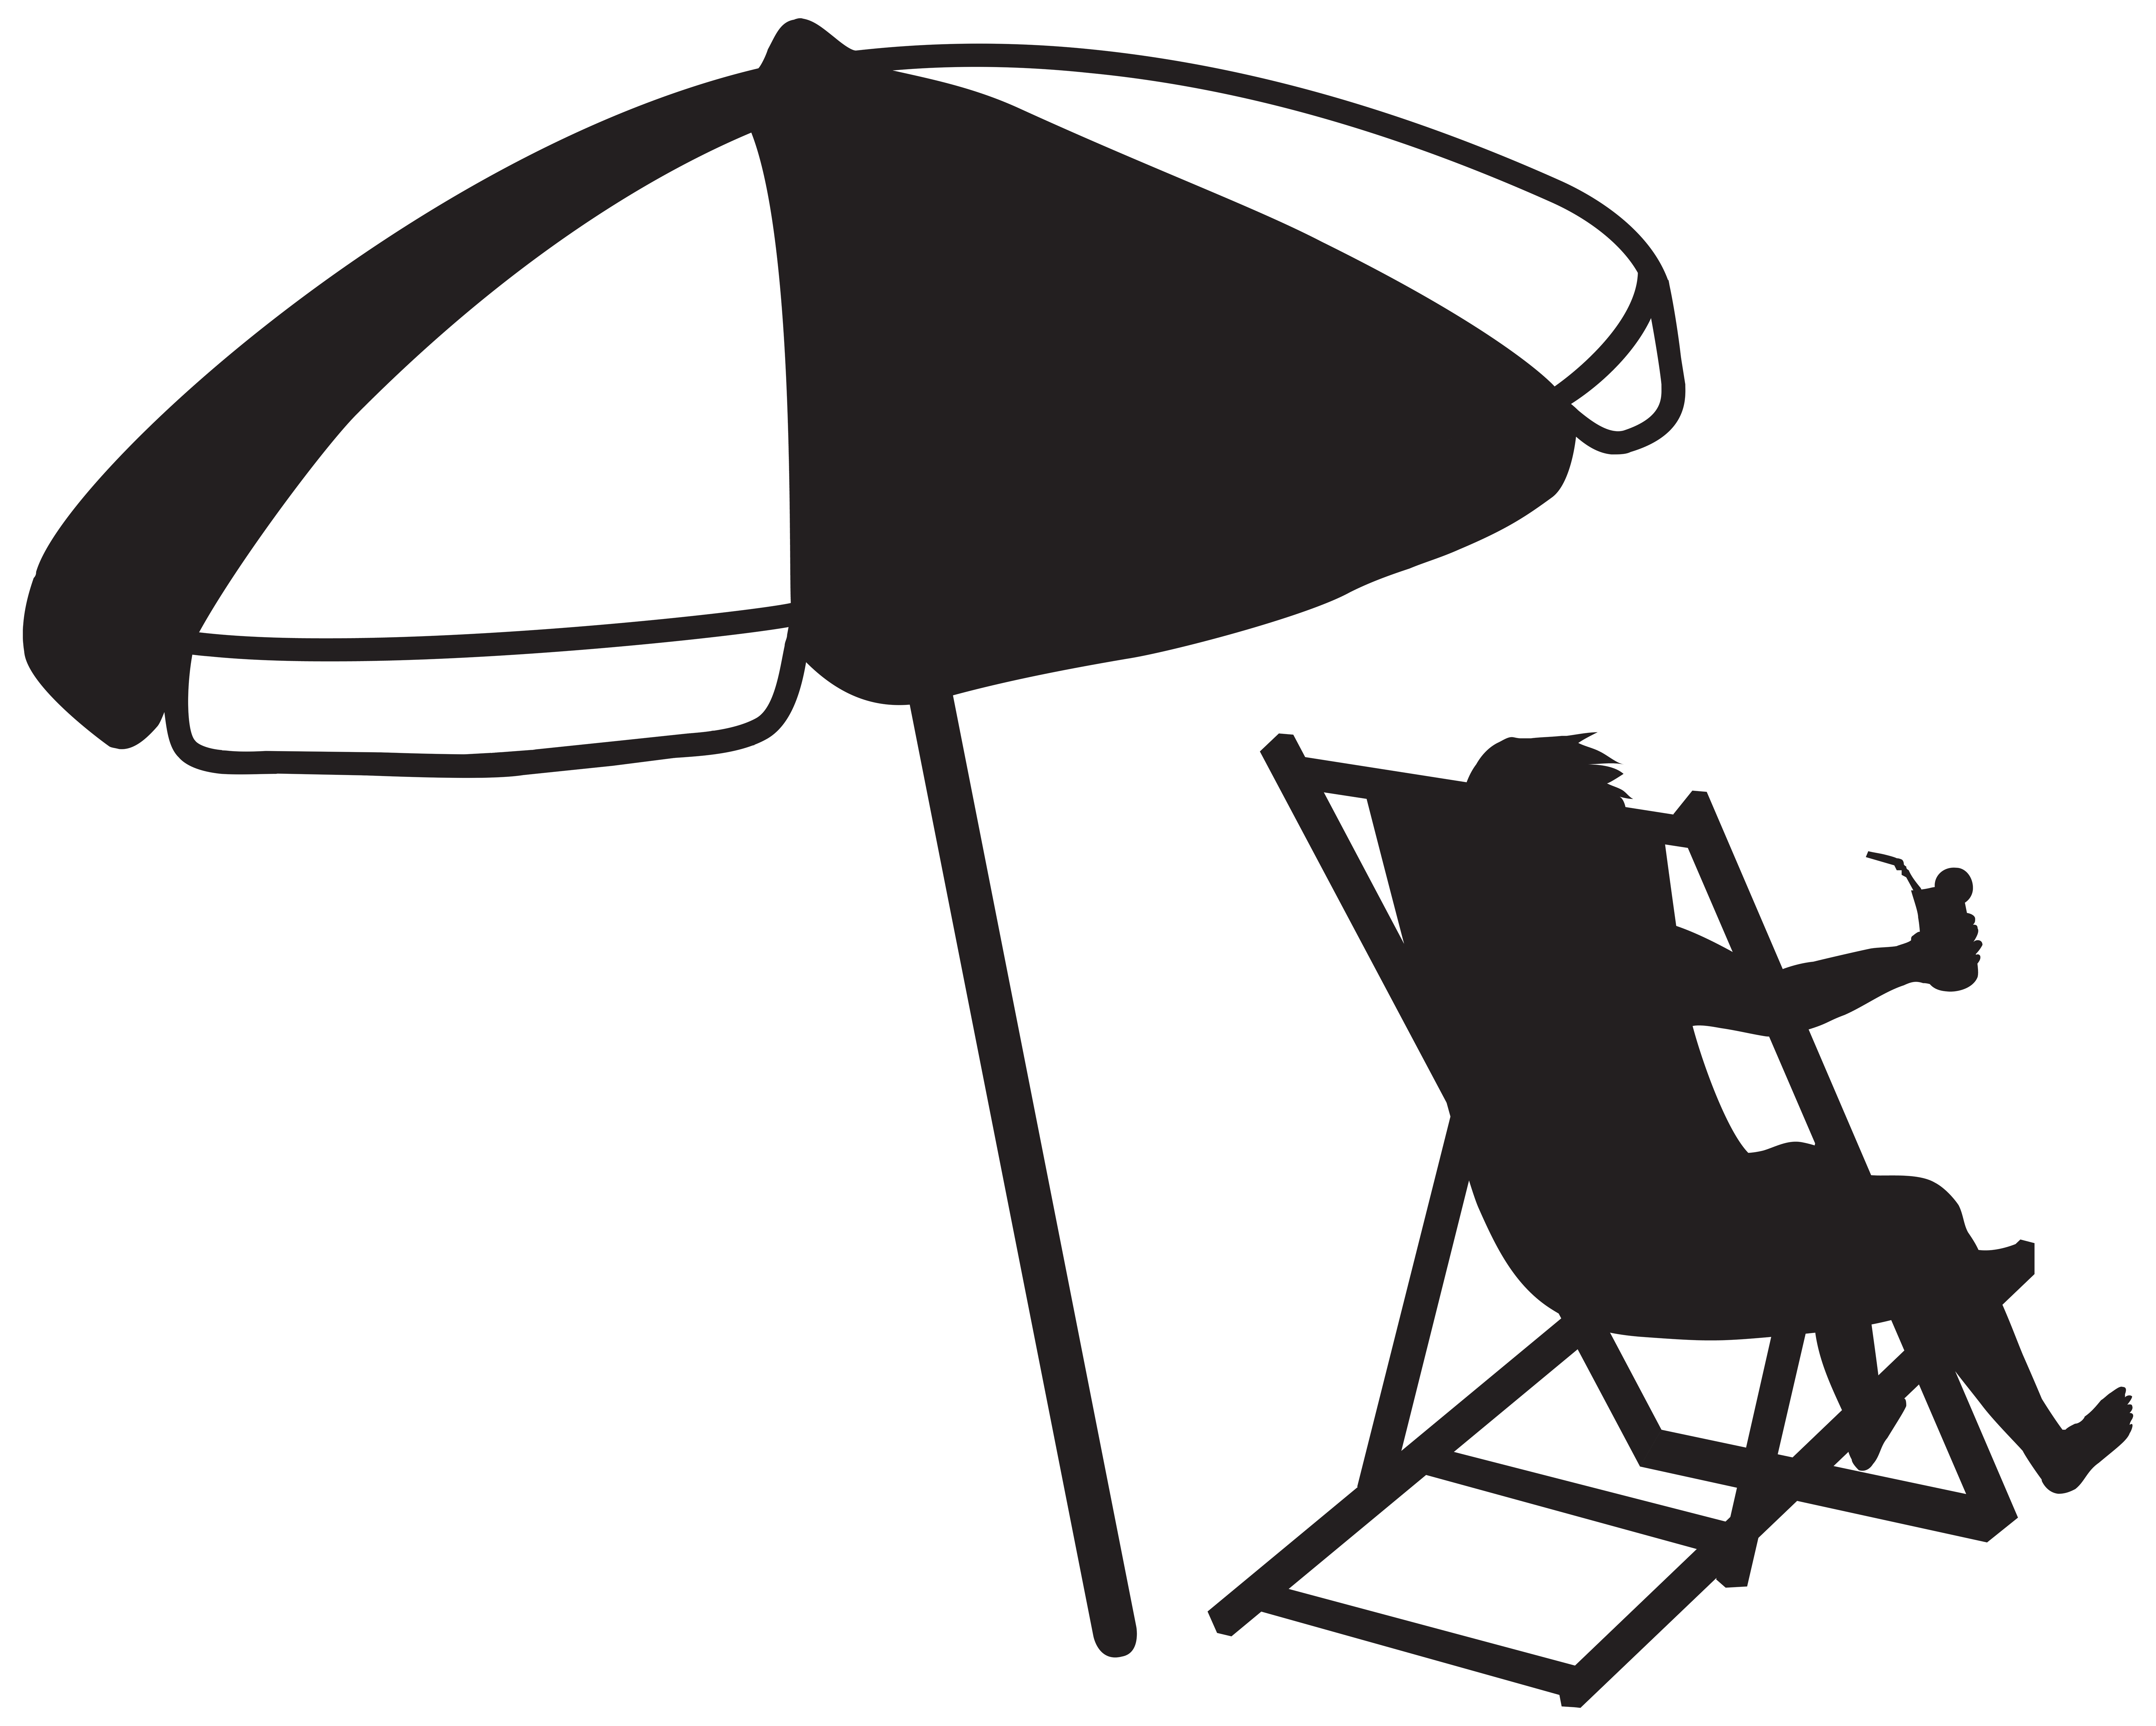 umbrella silhouette clip art - photo #46